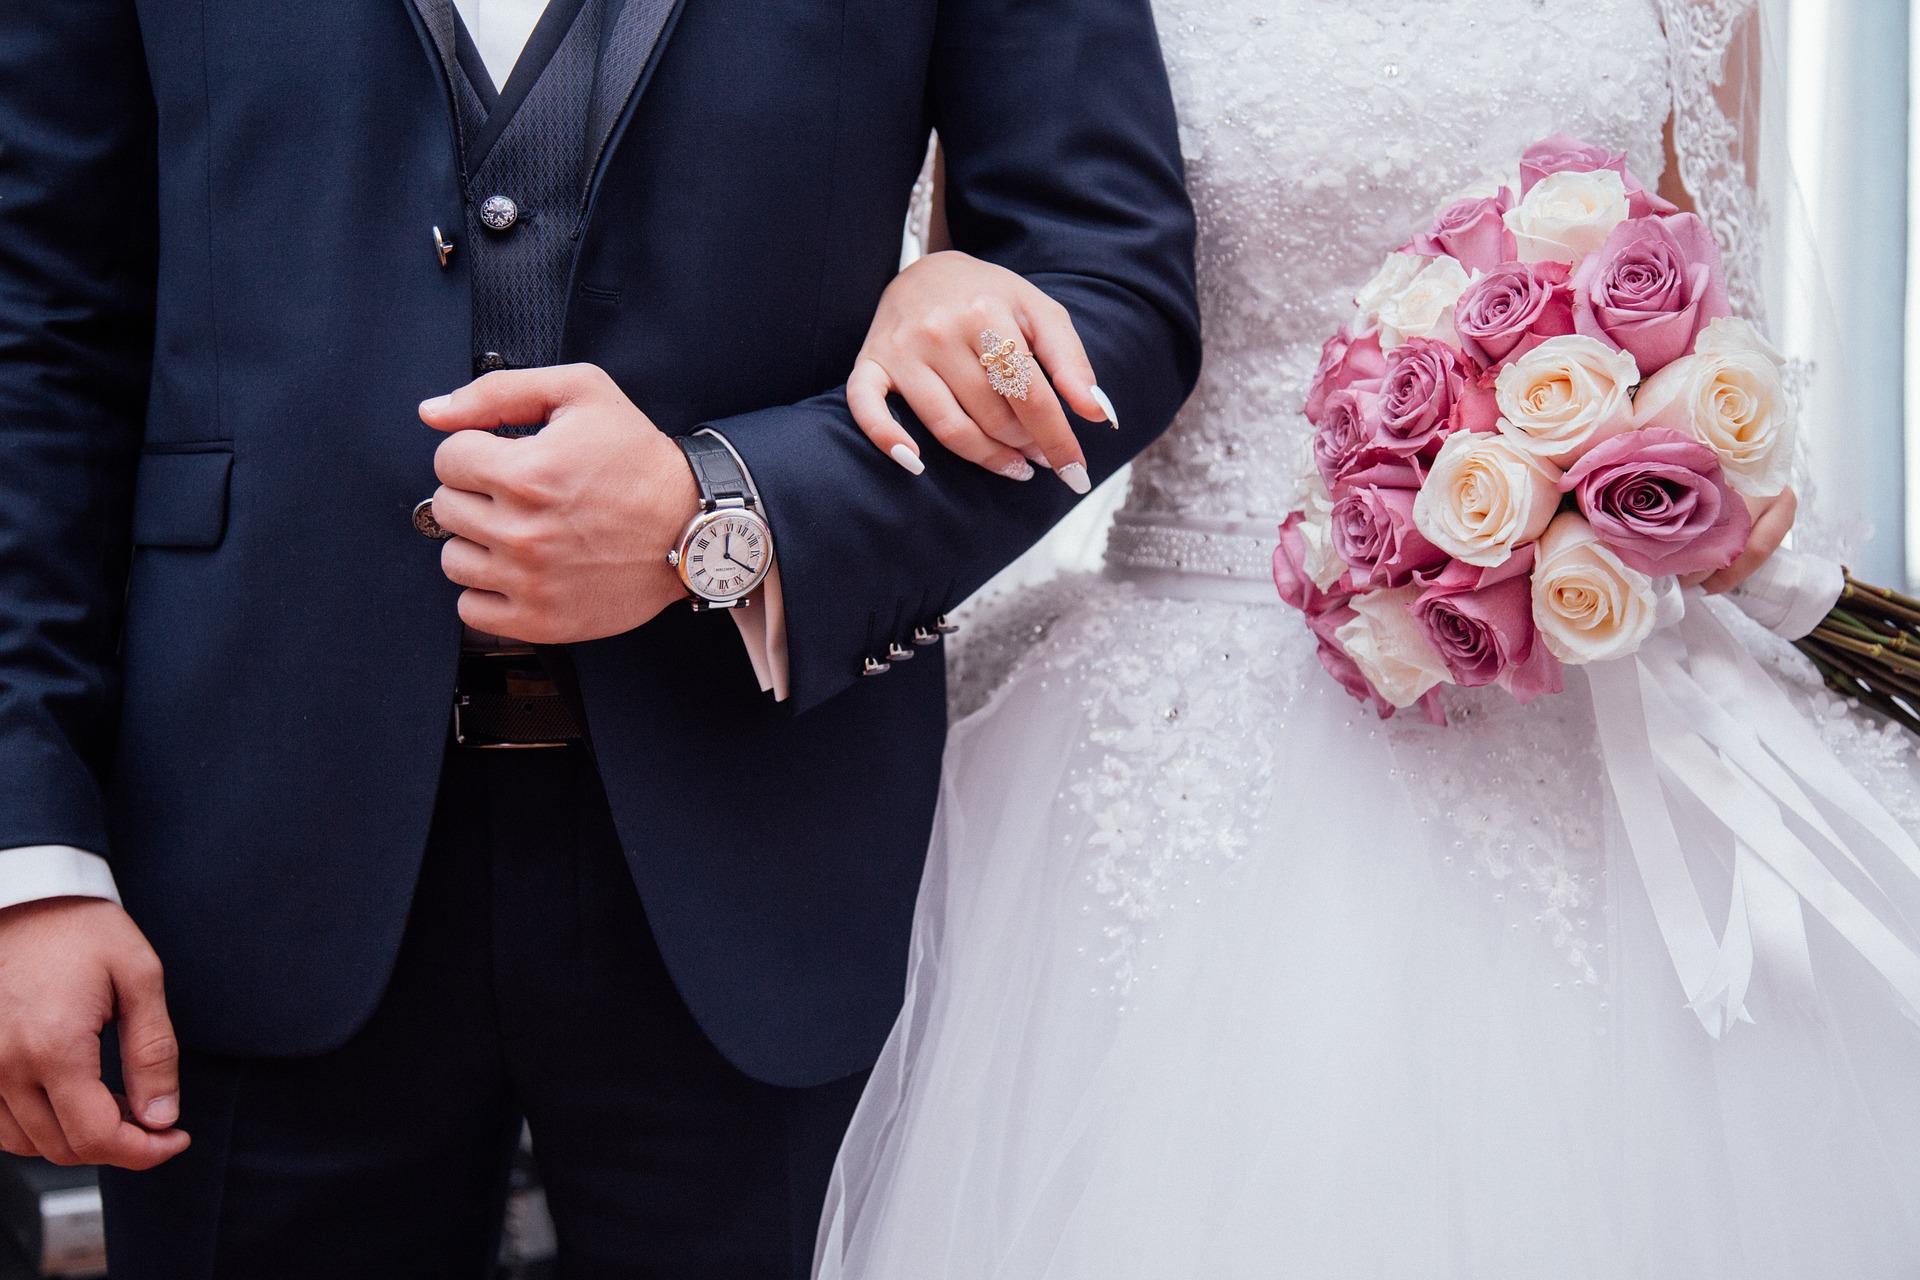 Un hombre y una mujer a punto de casarse. Fuente: Pixabay,